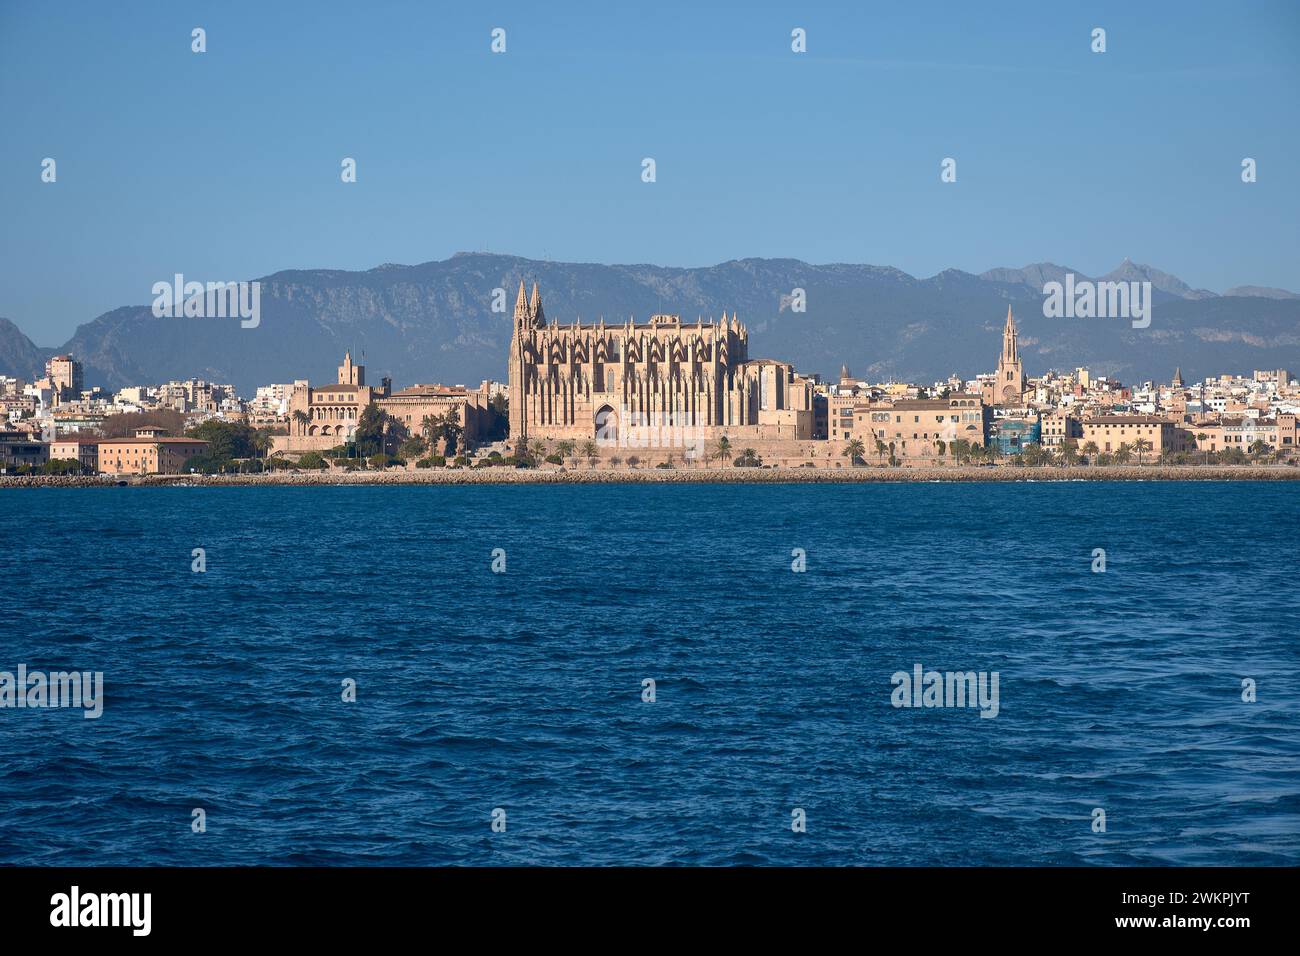 Blick auf die Kathedrale von Mallorca, La Seu, von einem Boot aus gesehen, das ihr sehr nahe kam Stockfoto